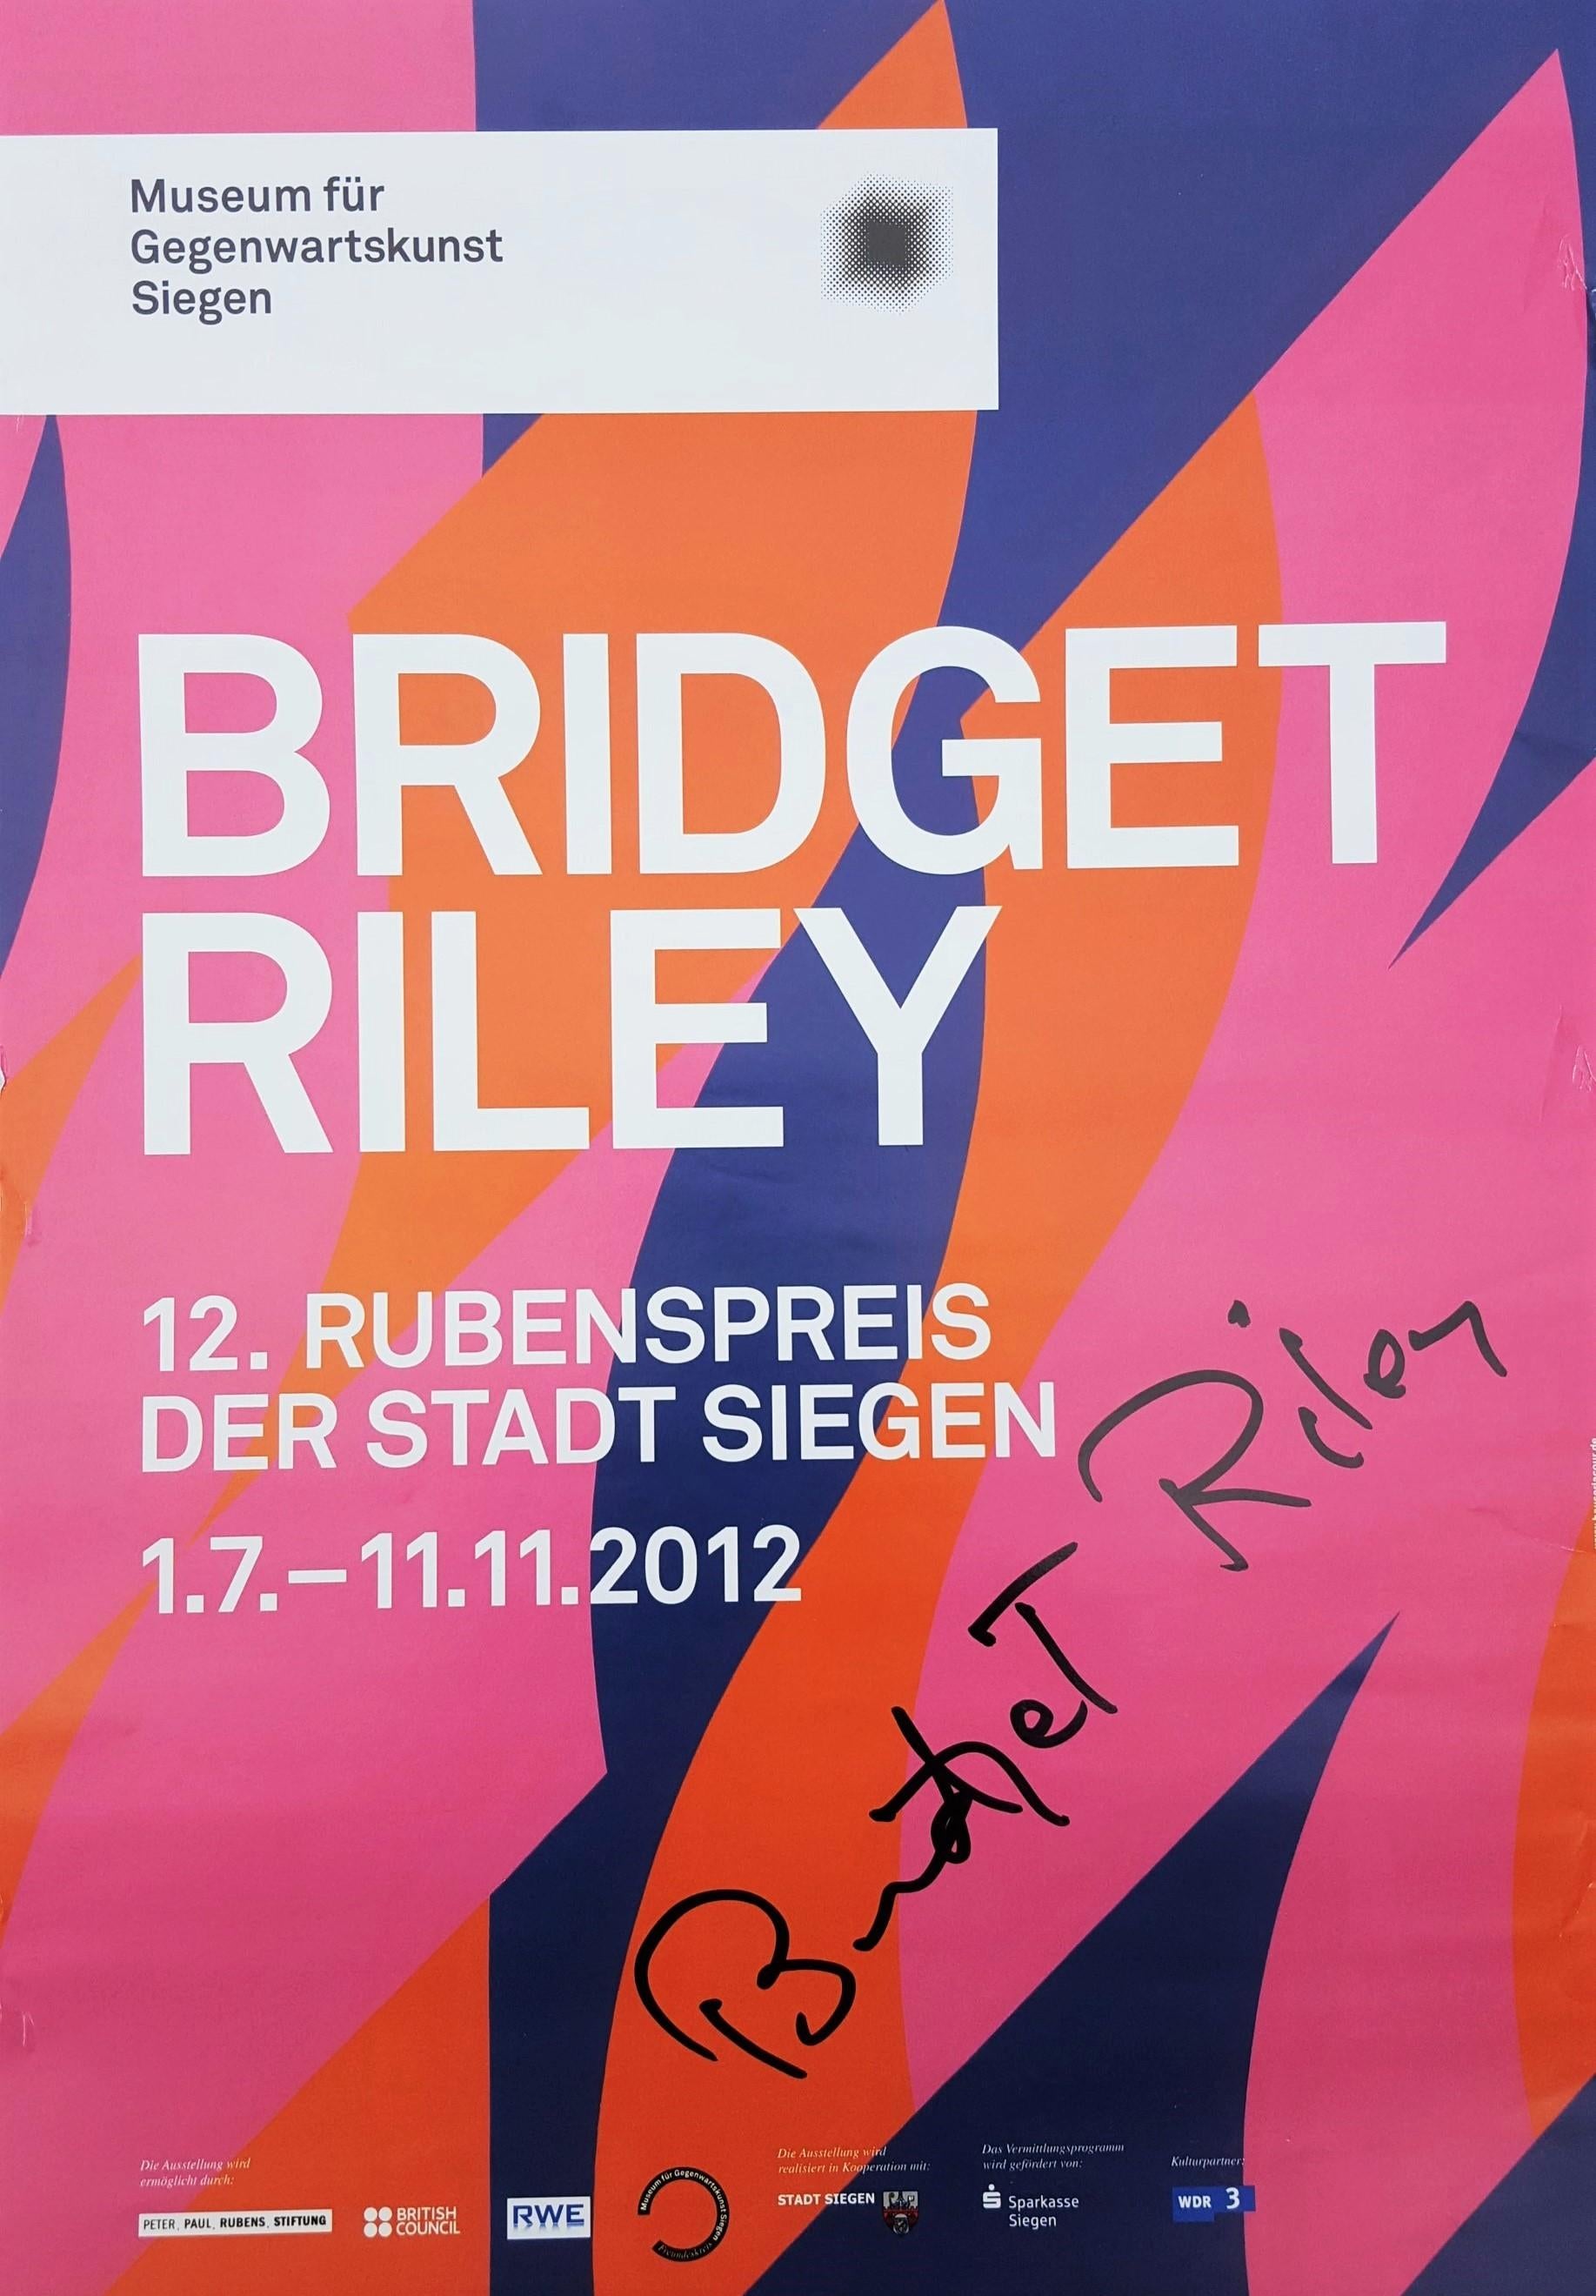 Bridget Riley Abstract Print - Museum für Gegenwartskunst Siegen (Two Reds with Violet) Poster (Signed)